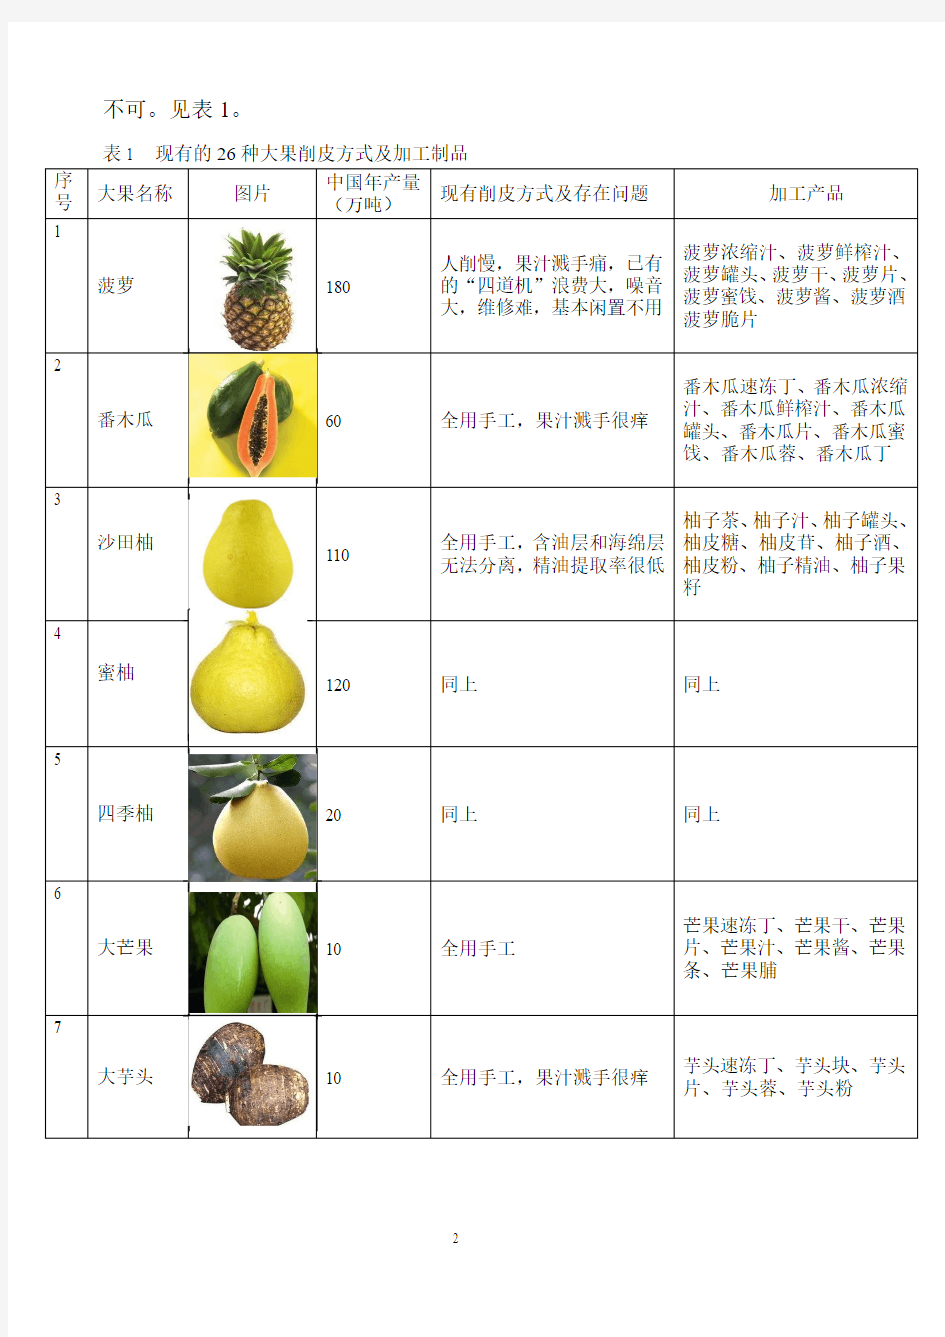 26种果蔬通用的大果削皮机及其应用